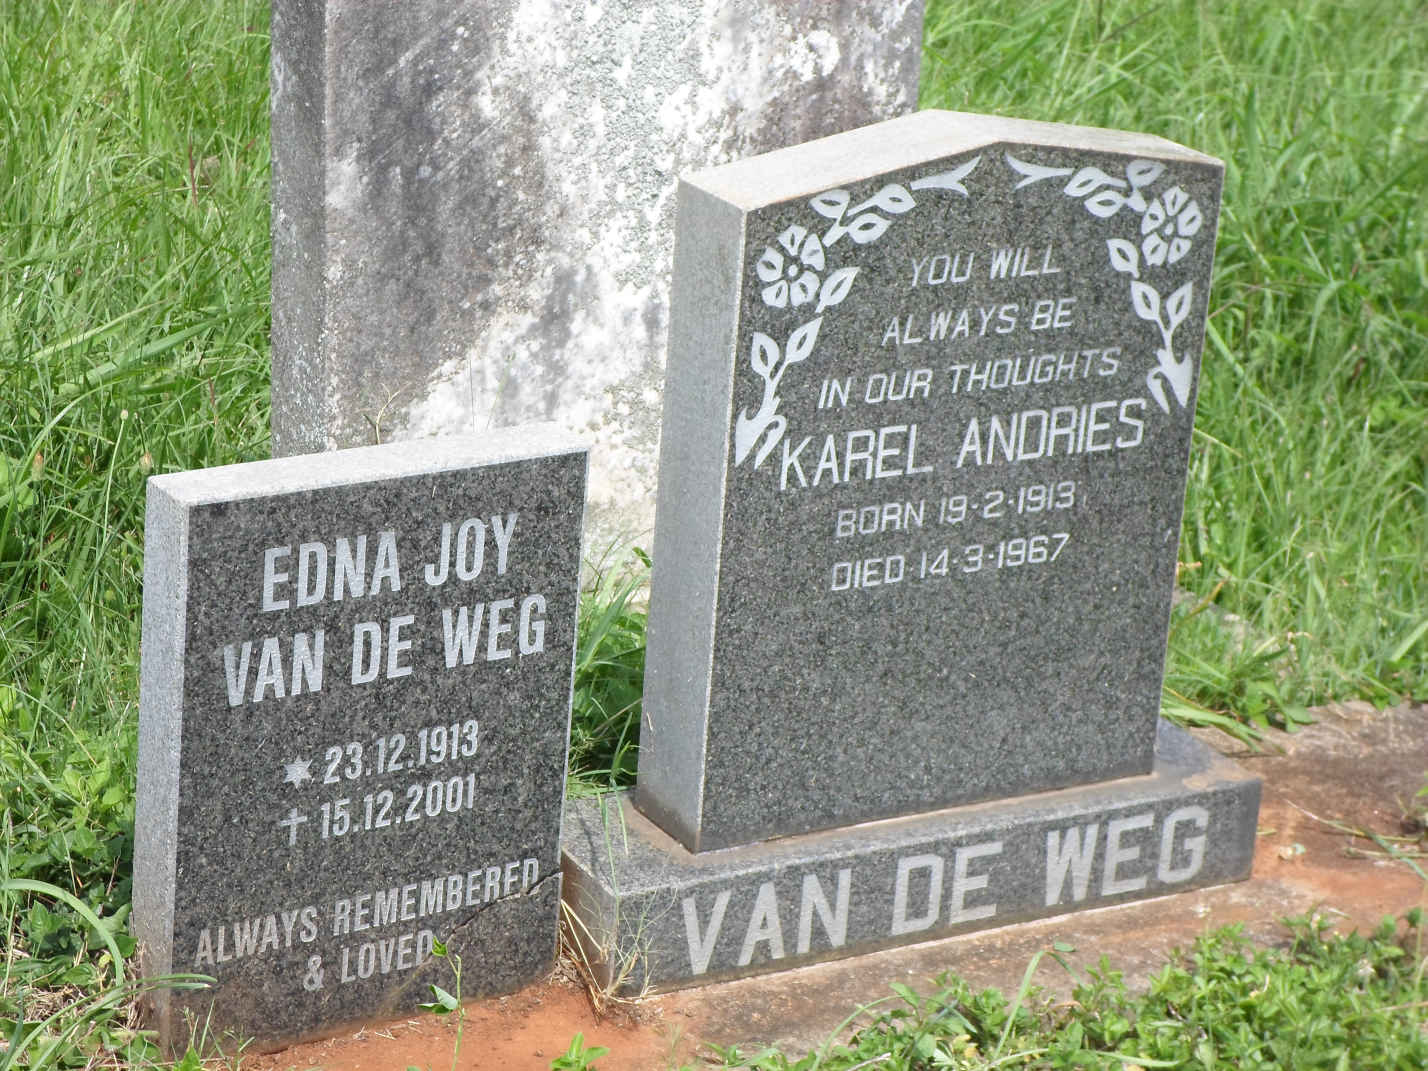 WEG Karel Andries, van de 1913-1967 & Edna Joy 1913-2001